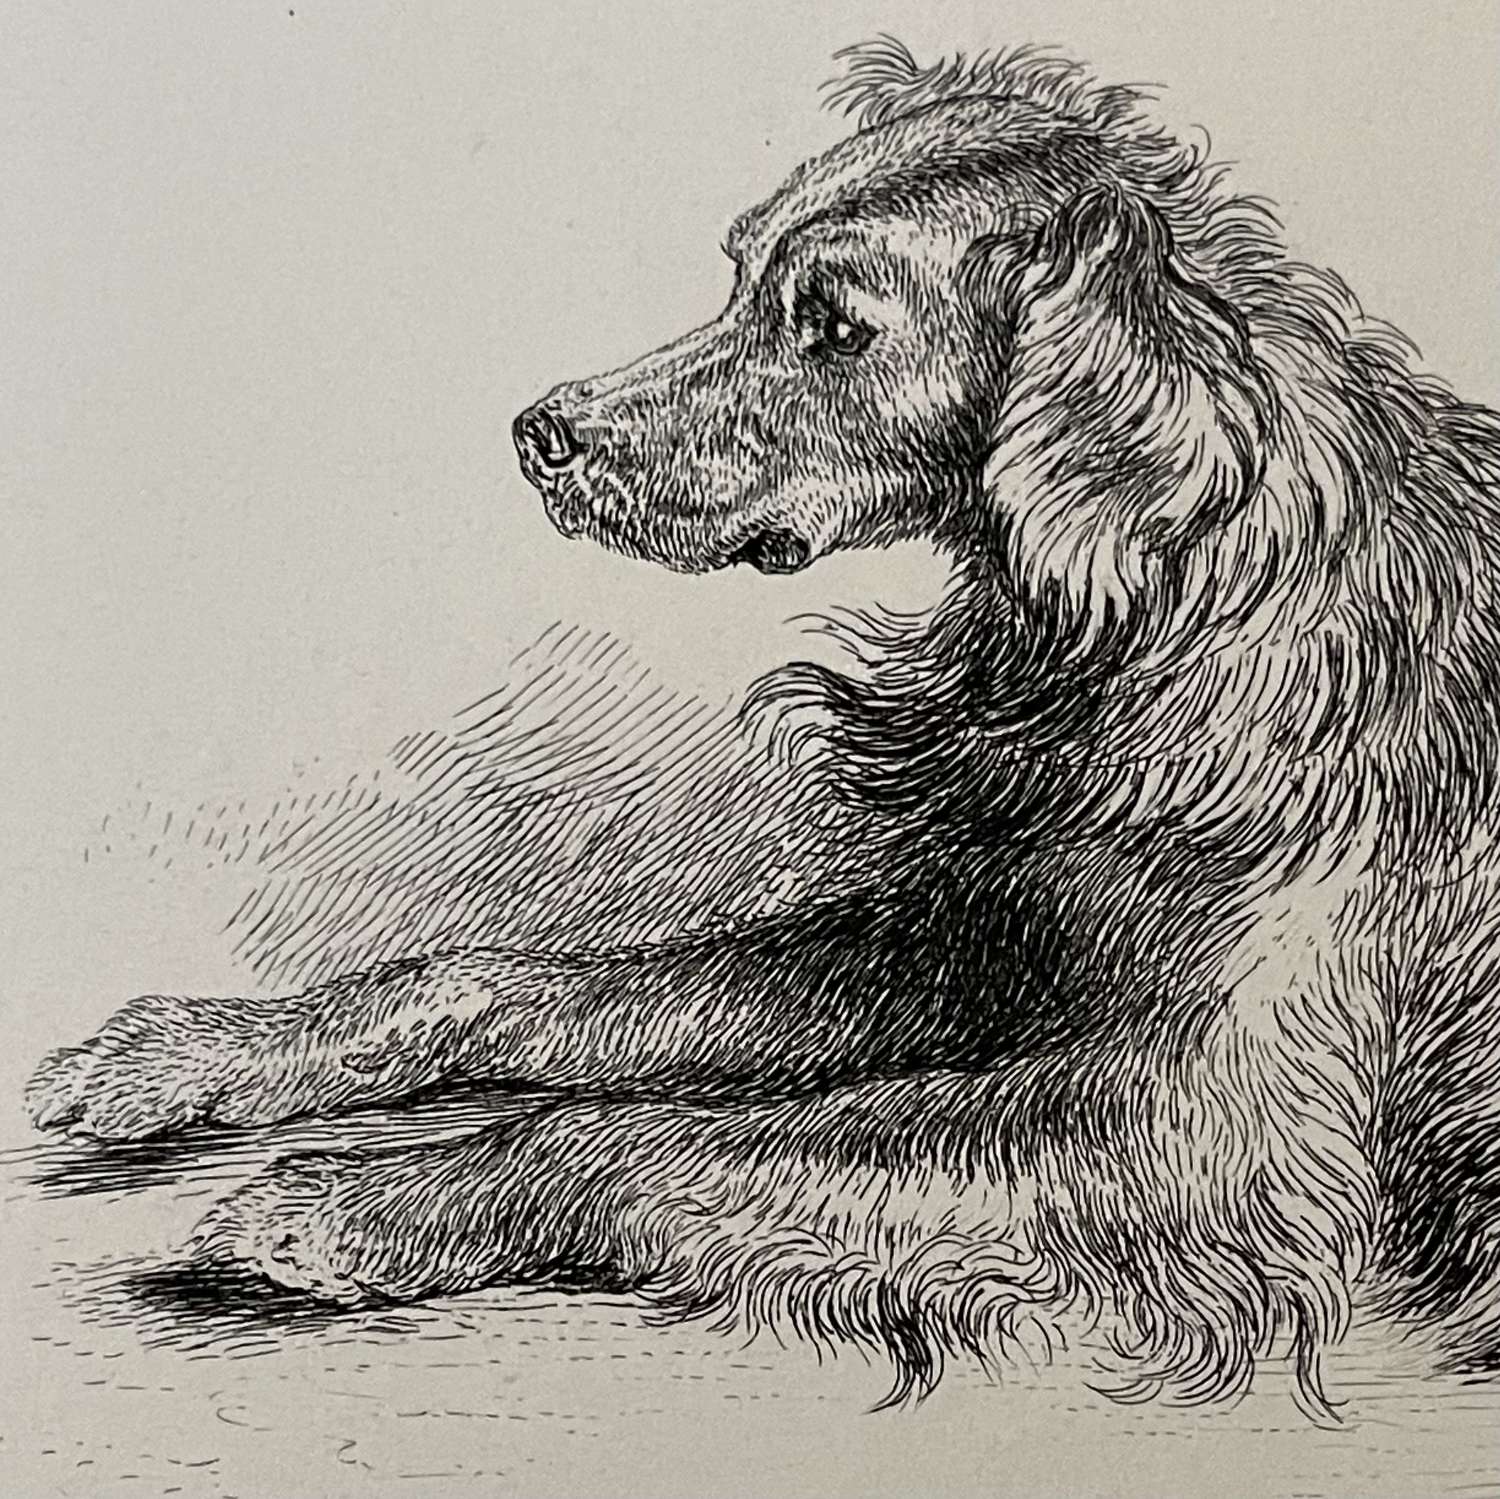 “ A Setter Dog” after Sir Edward Landseer